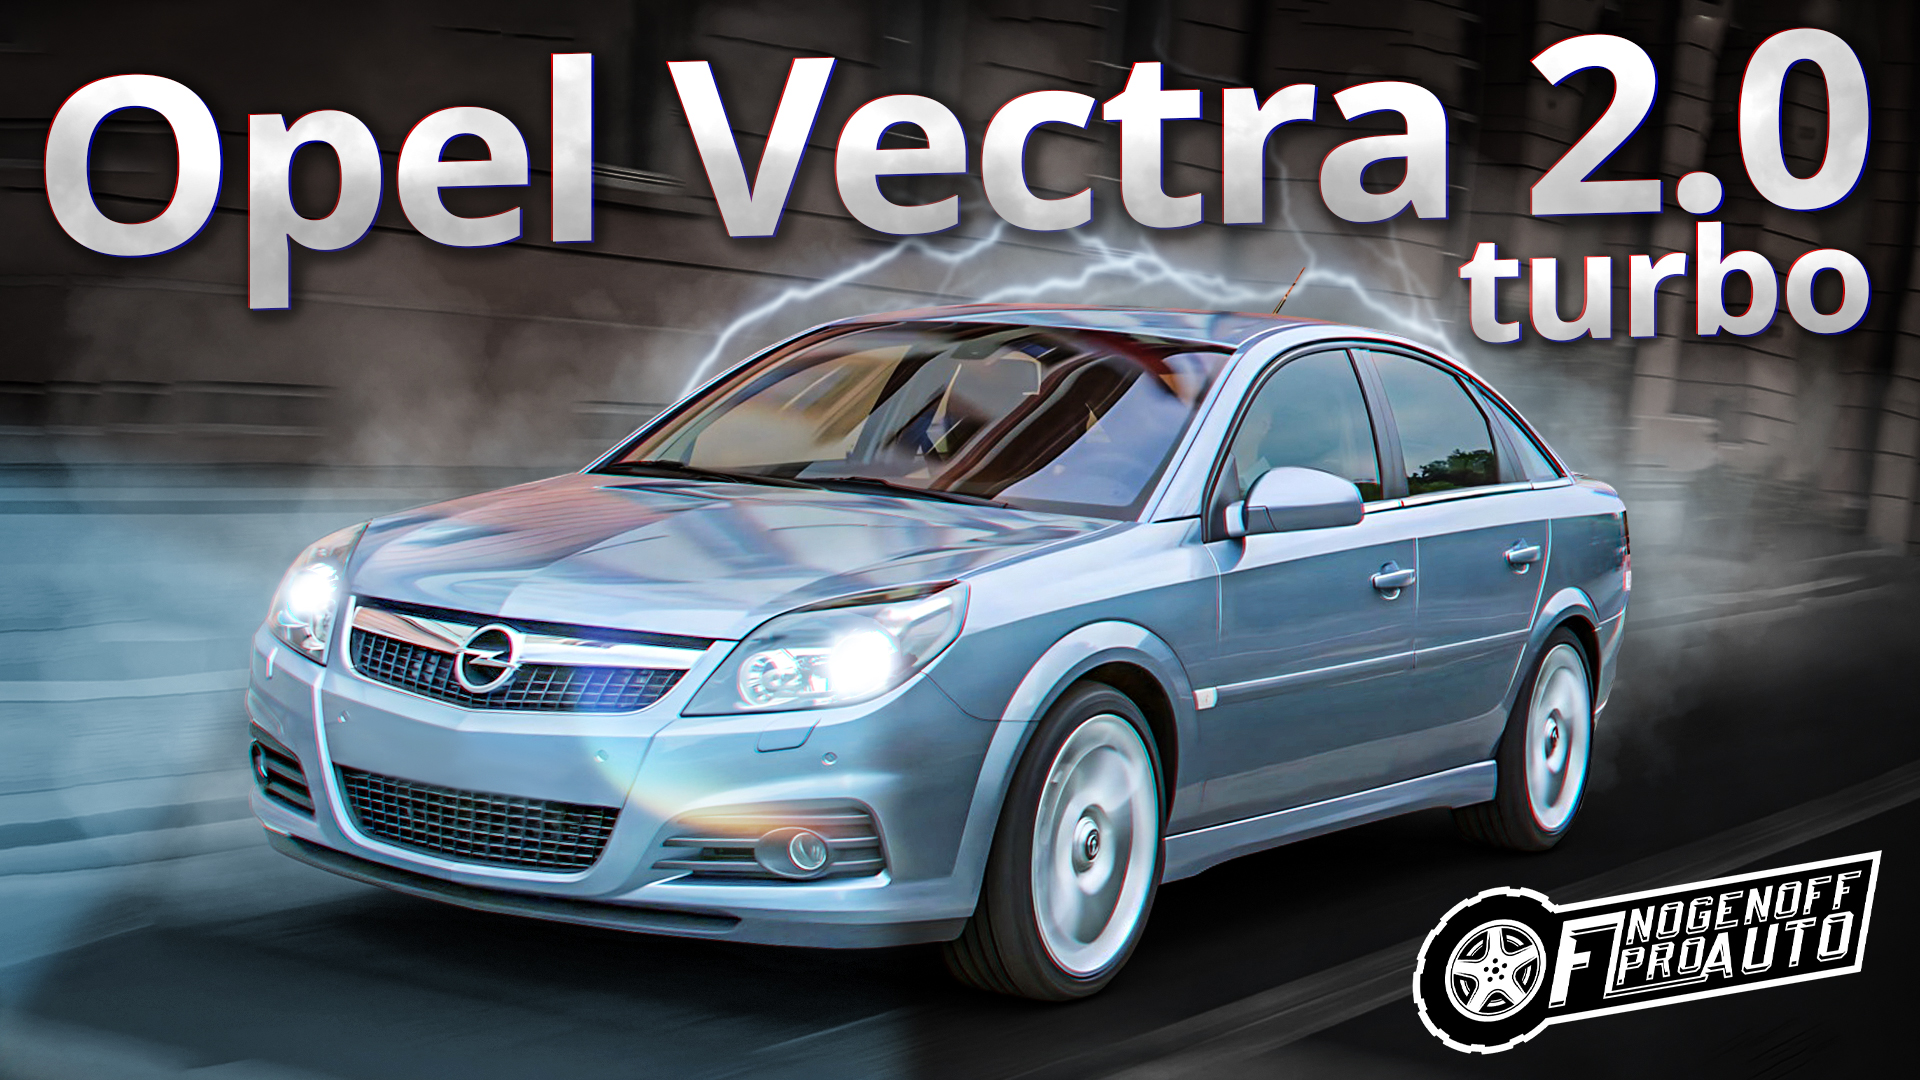 #НЕОбзор Opel Vectra C: Рассказ владельца про Opel Vectra C 2.0 Turbo.